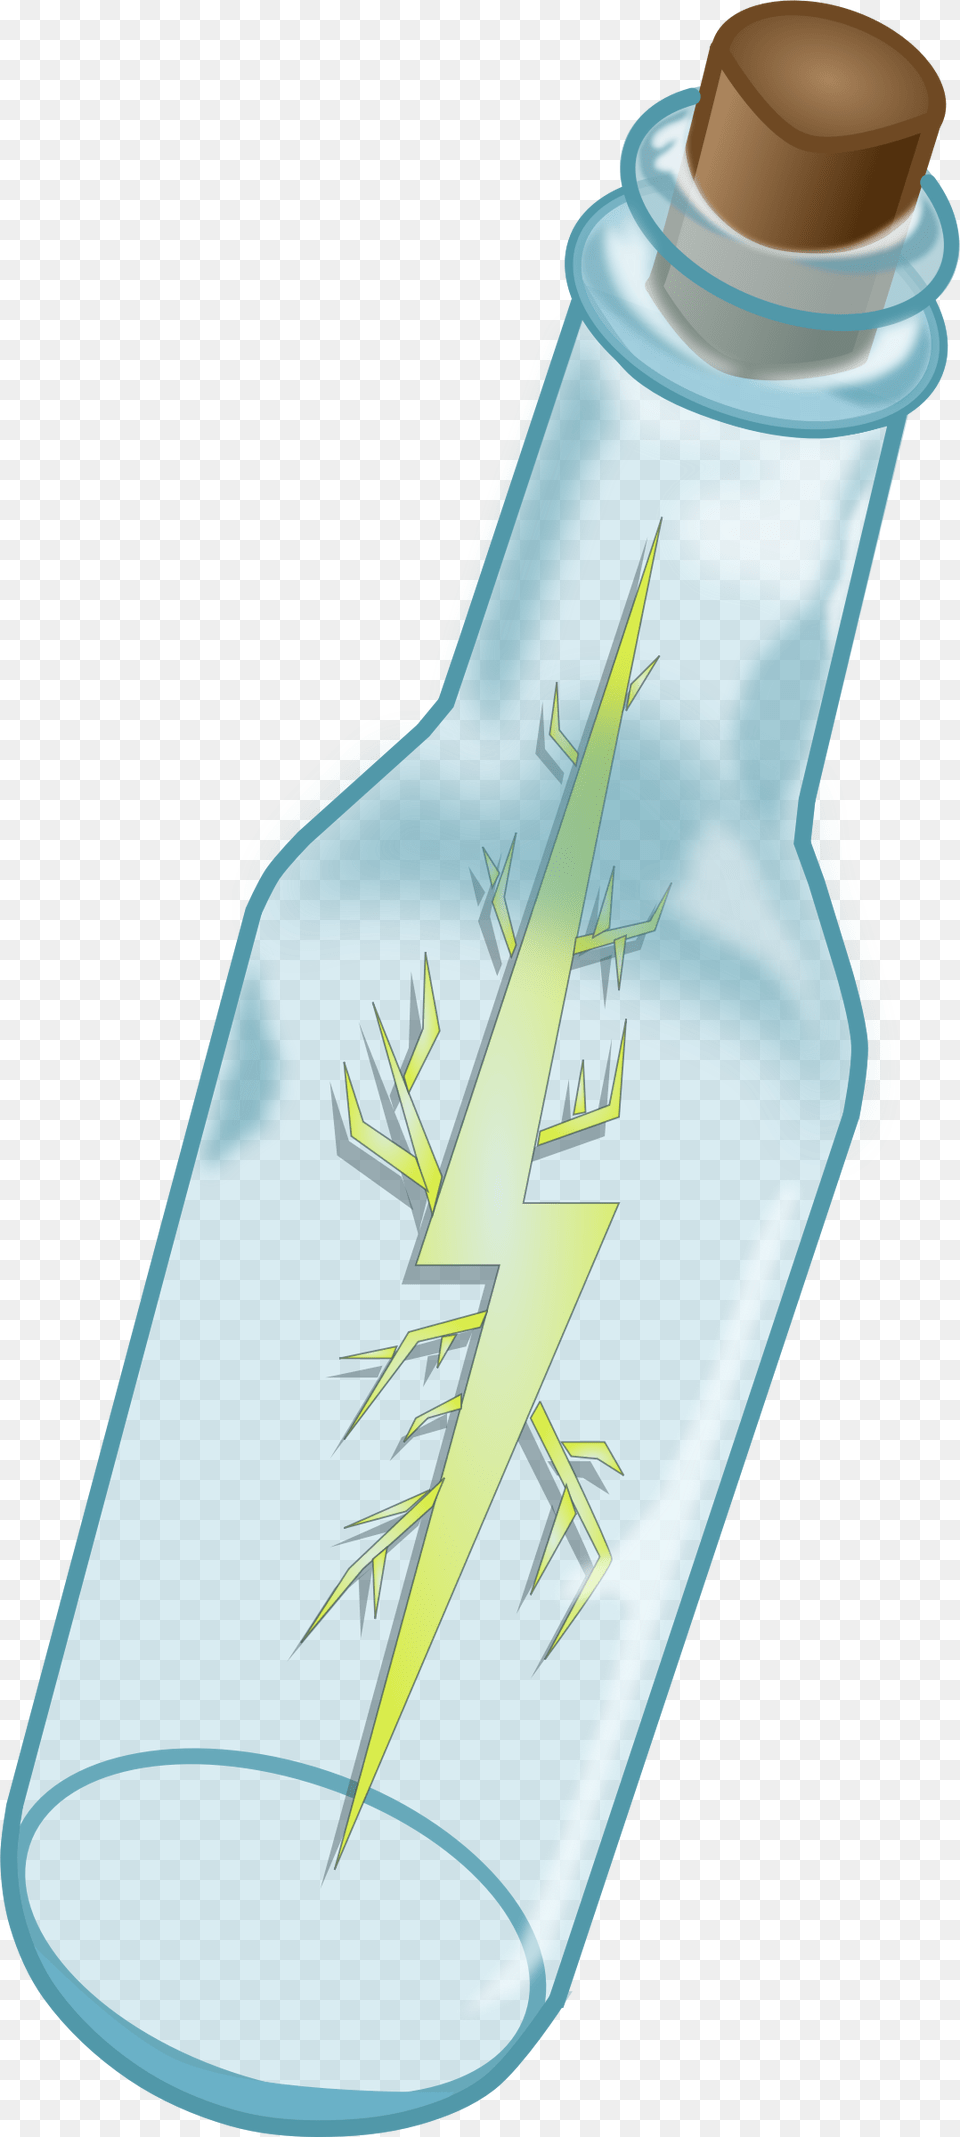 Lightning In A Bottle Clip Arts Lightning In A Bottle, Jar, Glass, Shaker Free Png Download